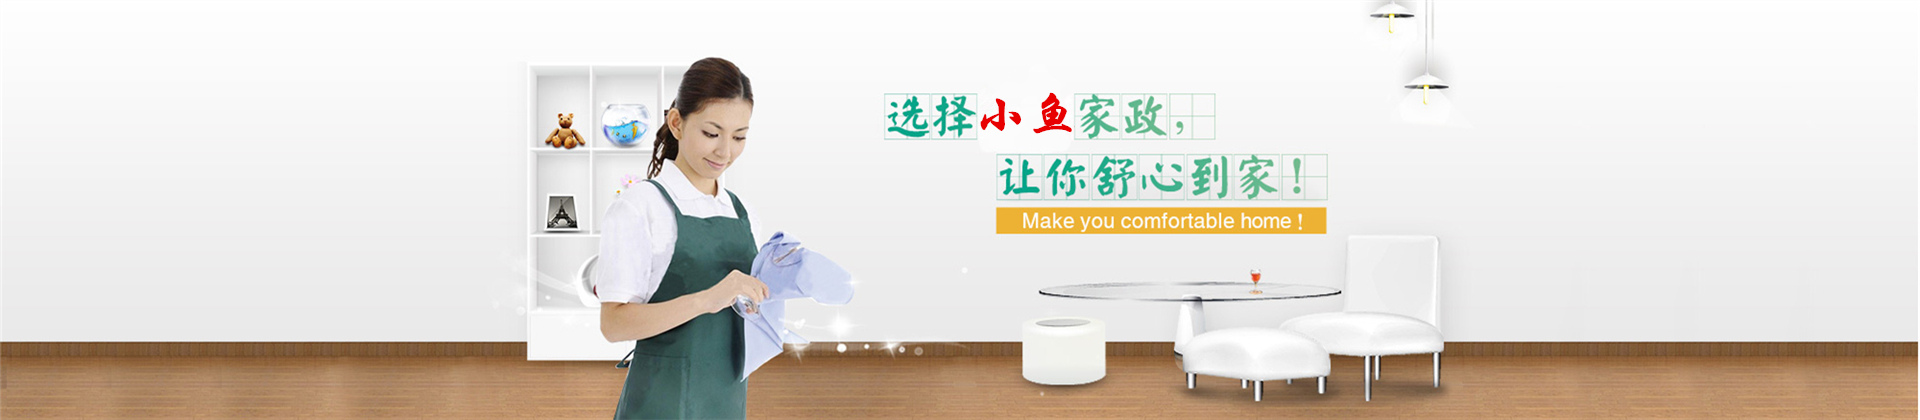 银川长沙家政服务公司加入富海360进行企业网站推广